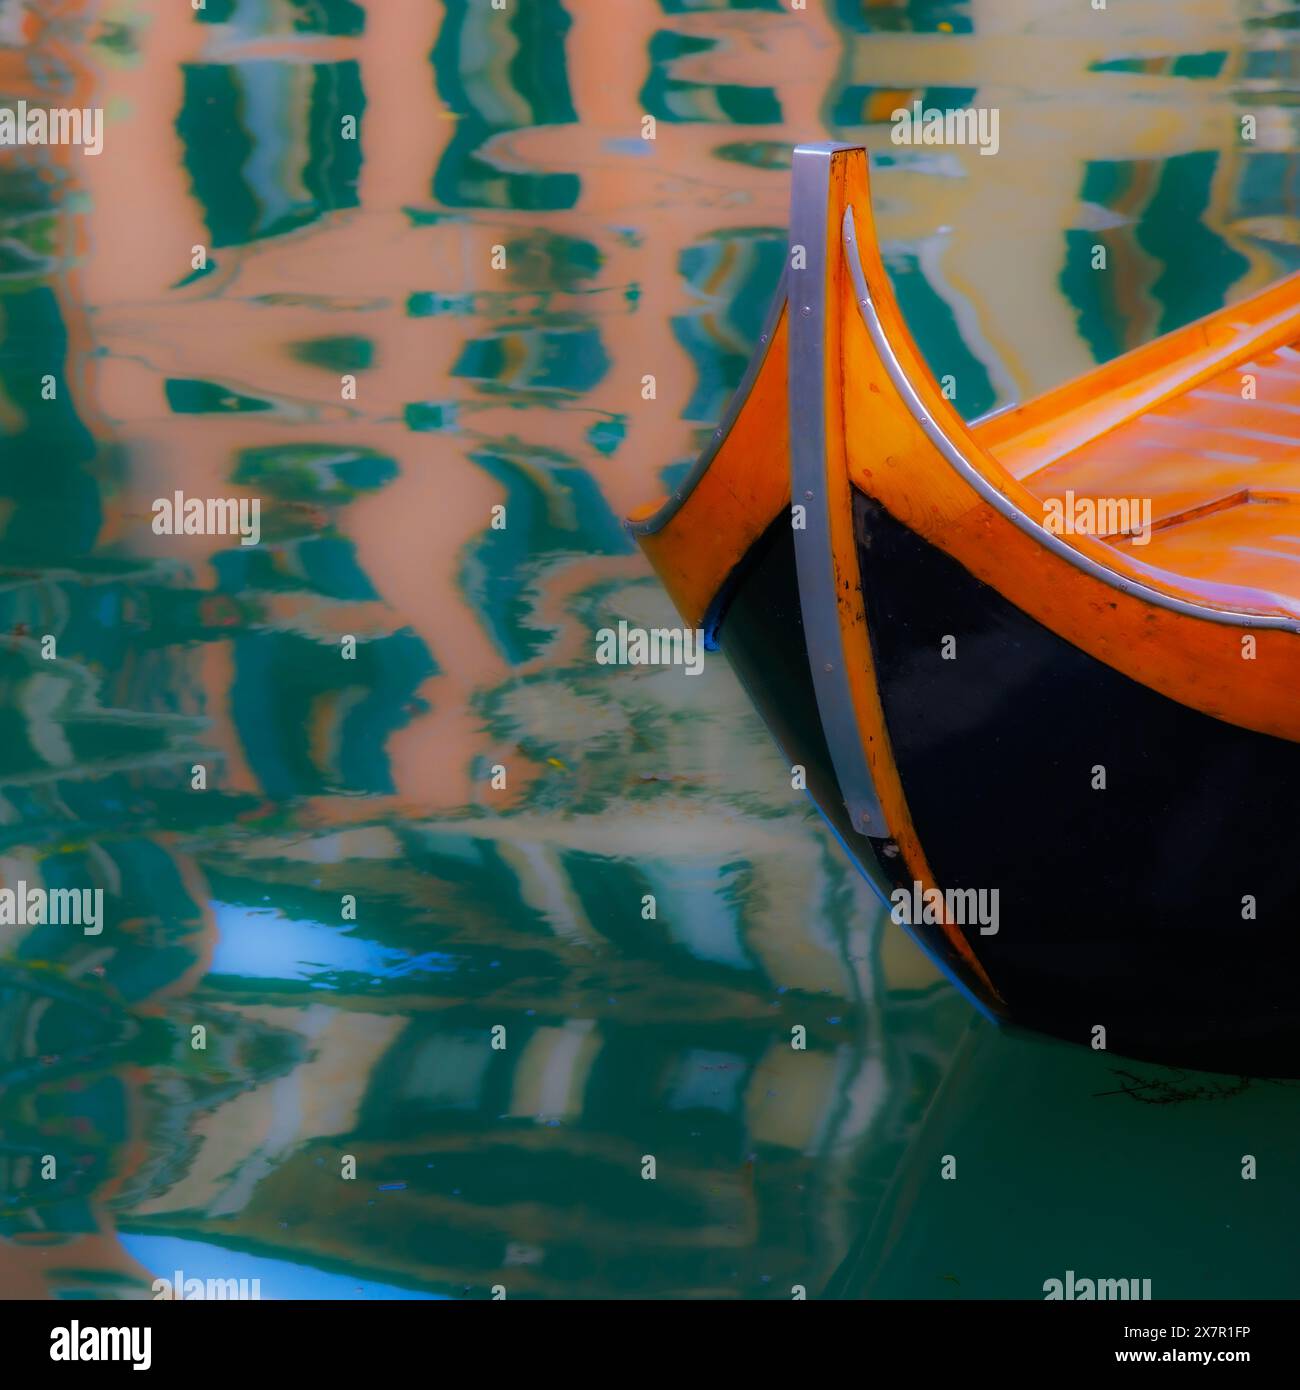 Venise, Province de Venise, région de Vénétie, Italie. Proue d'un bateau de transport à rames typique appelé caorlina. Venise est classée au patrimoine mondial de l'UNESCO. Banque D'Images